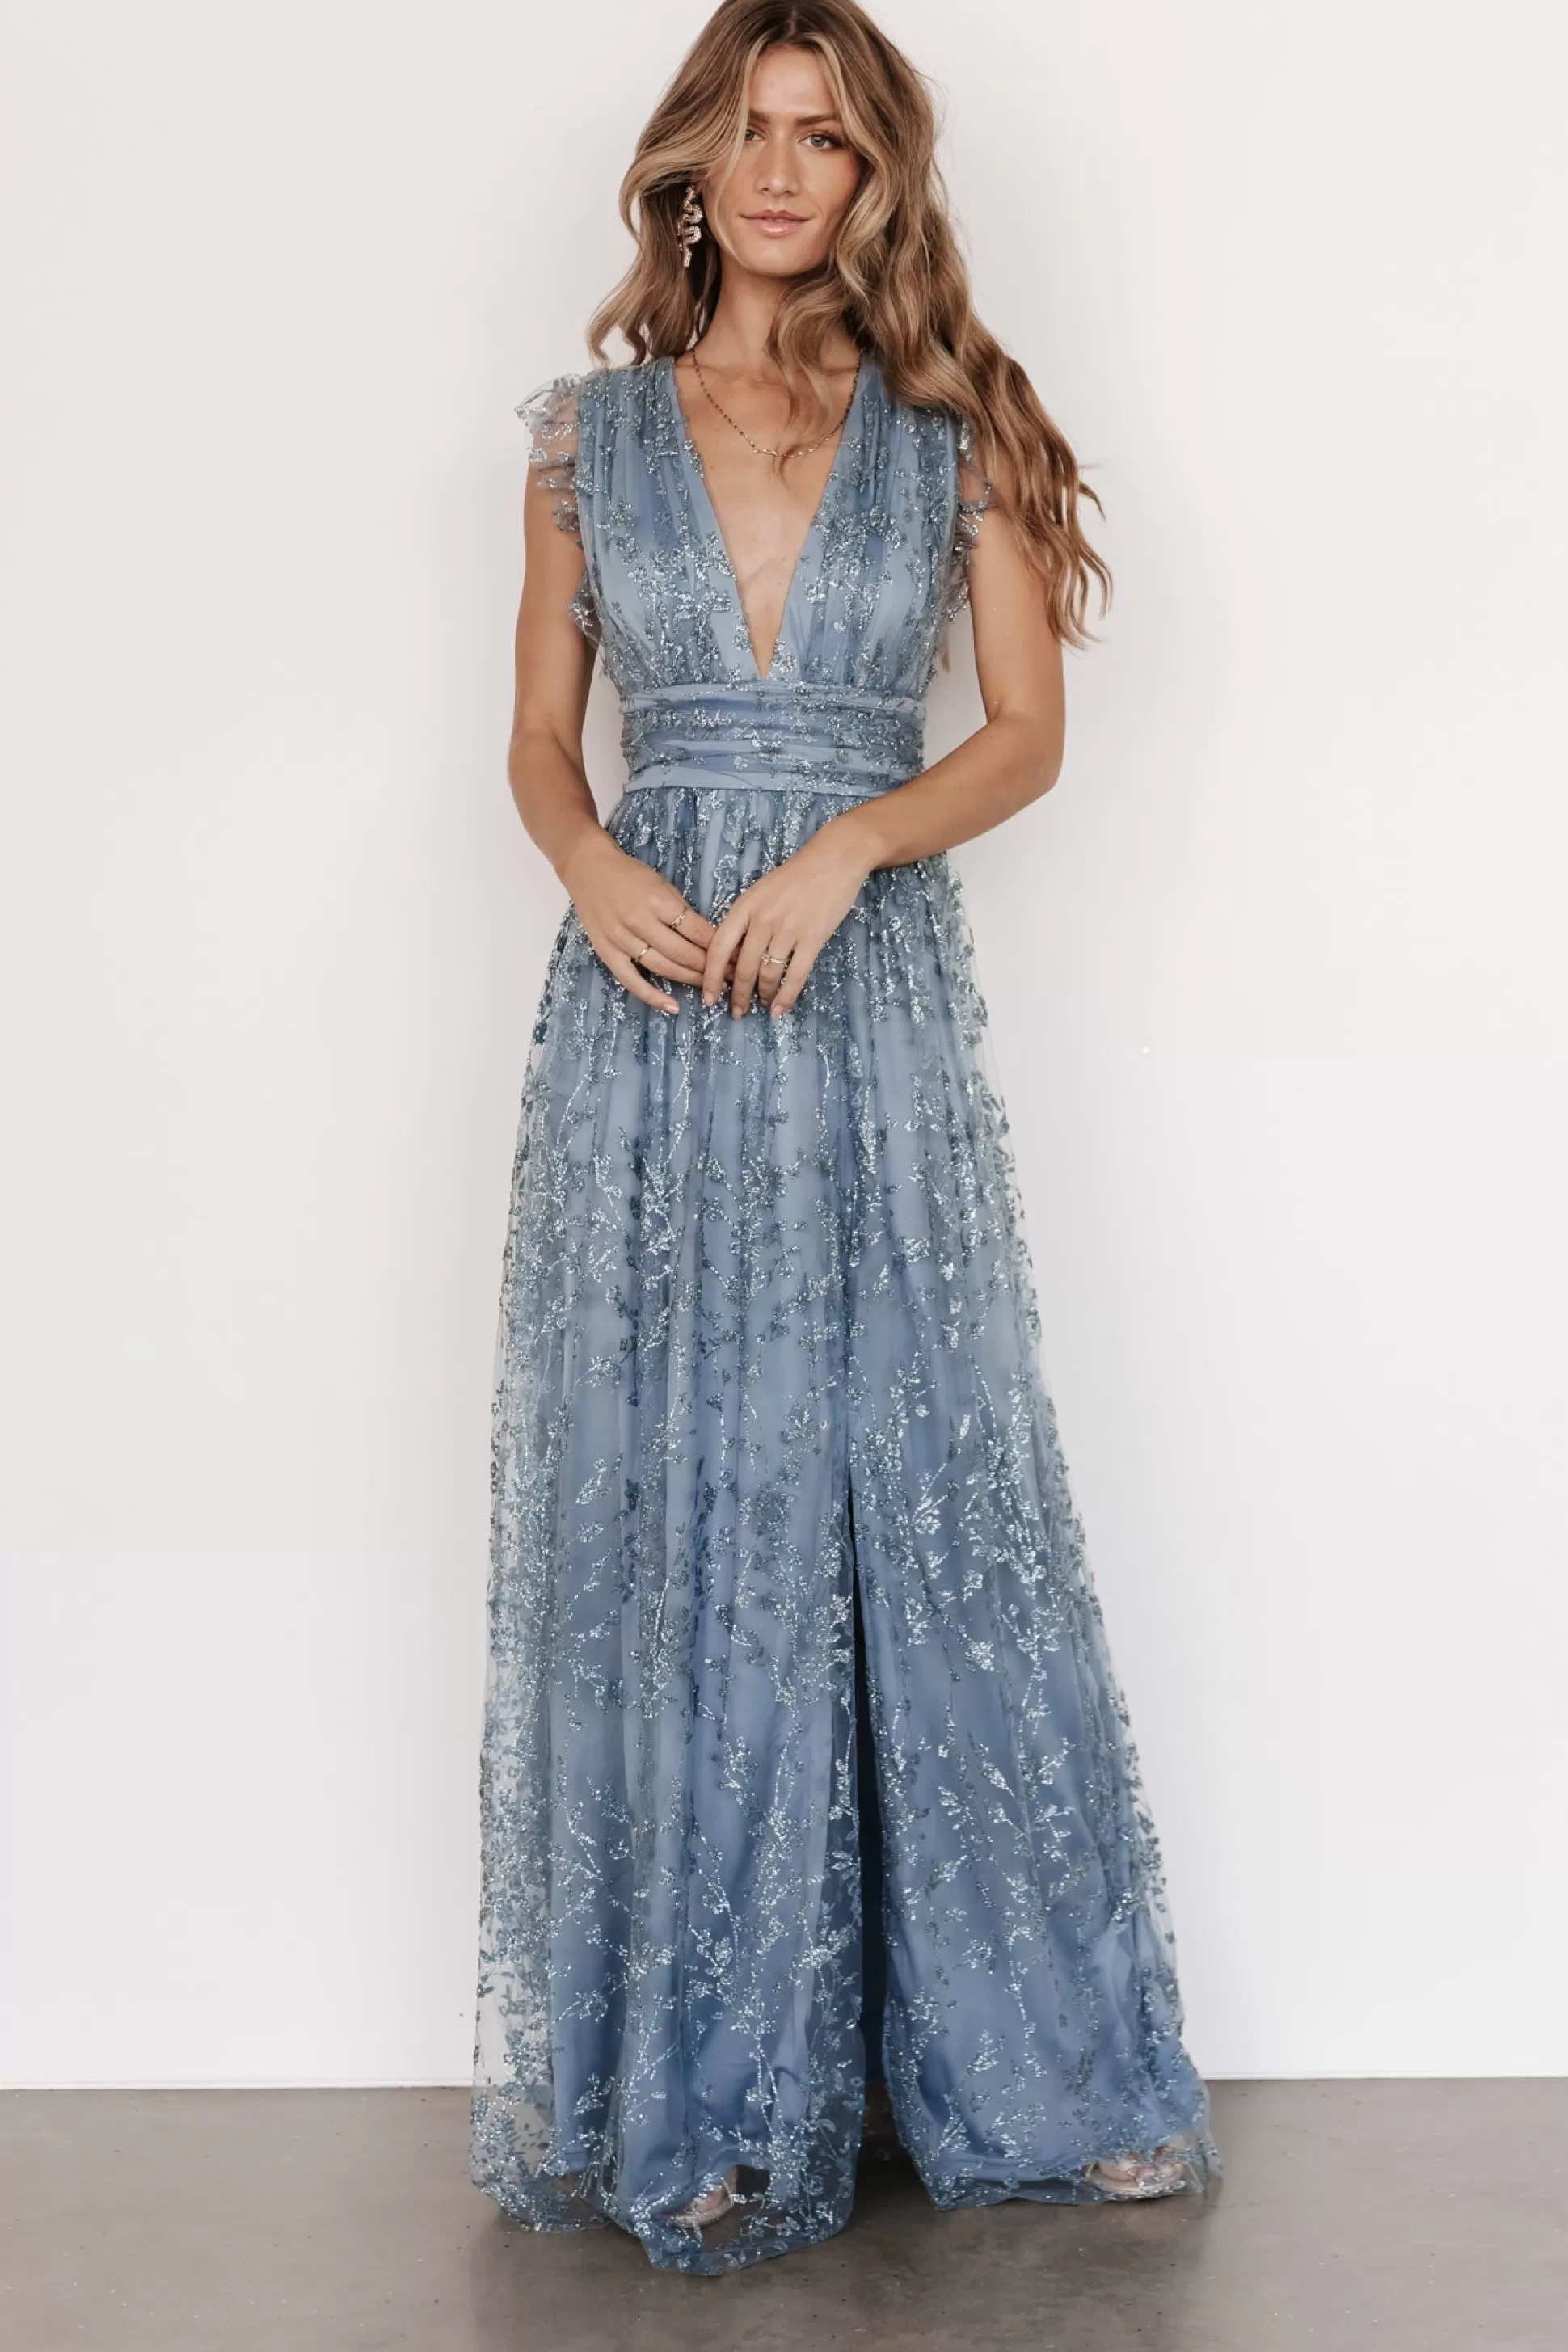 embellished + sequined | Baltic Born Arlene Shimmer Gown | Winter Blue